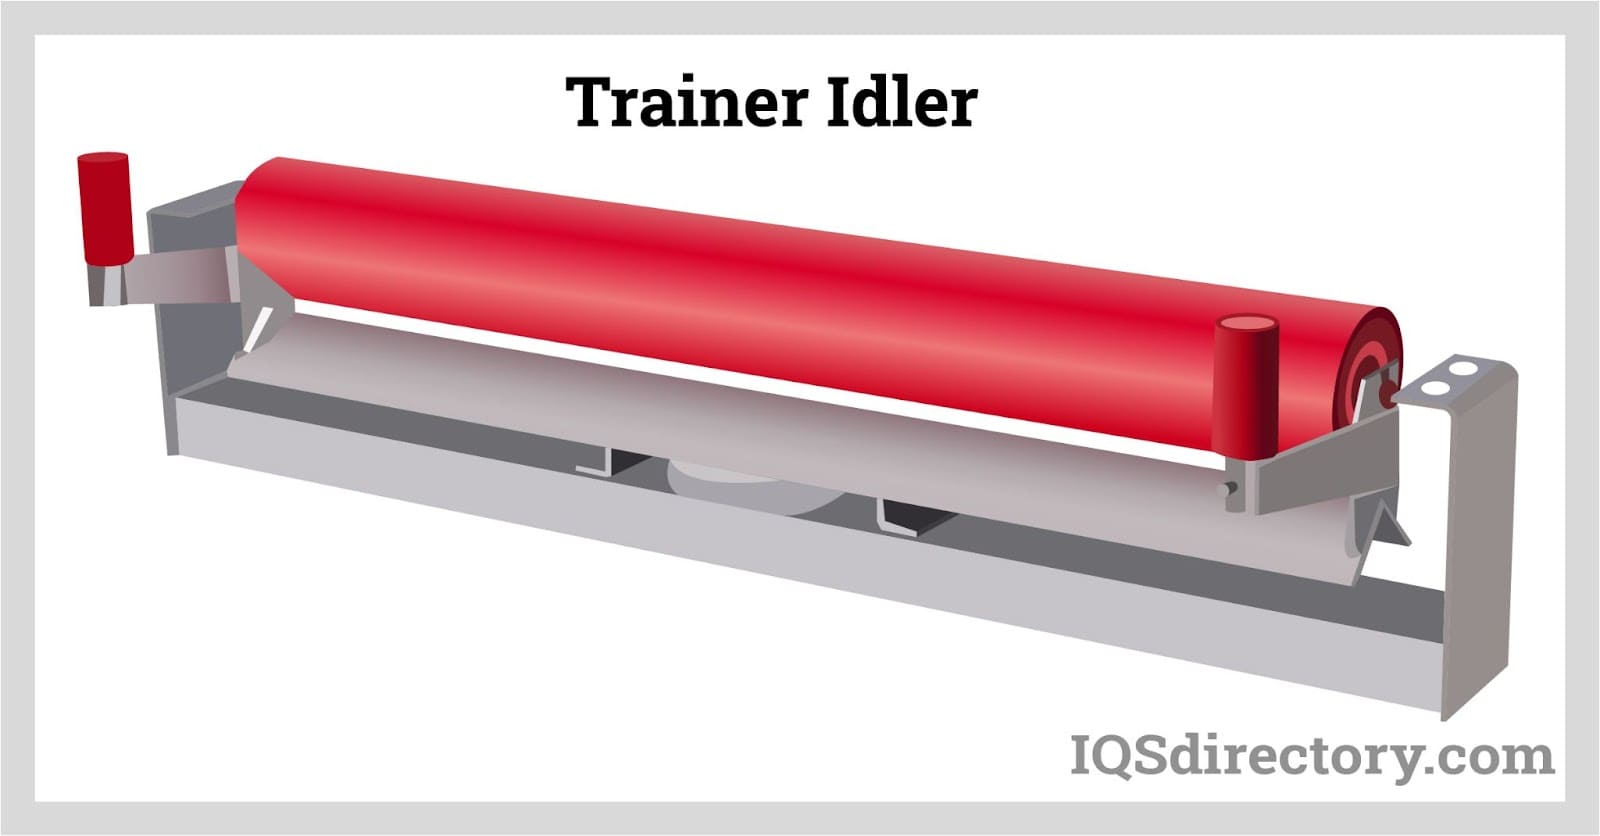 Trainer Idler